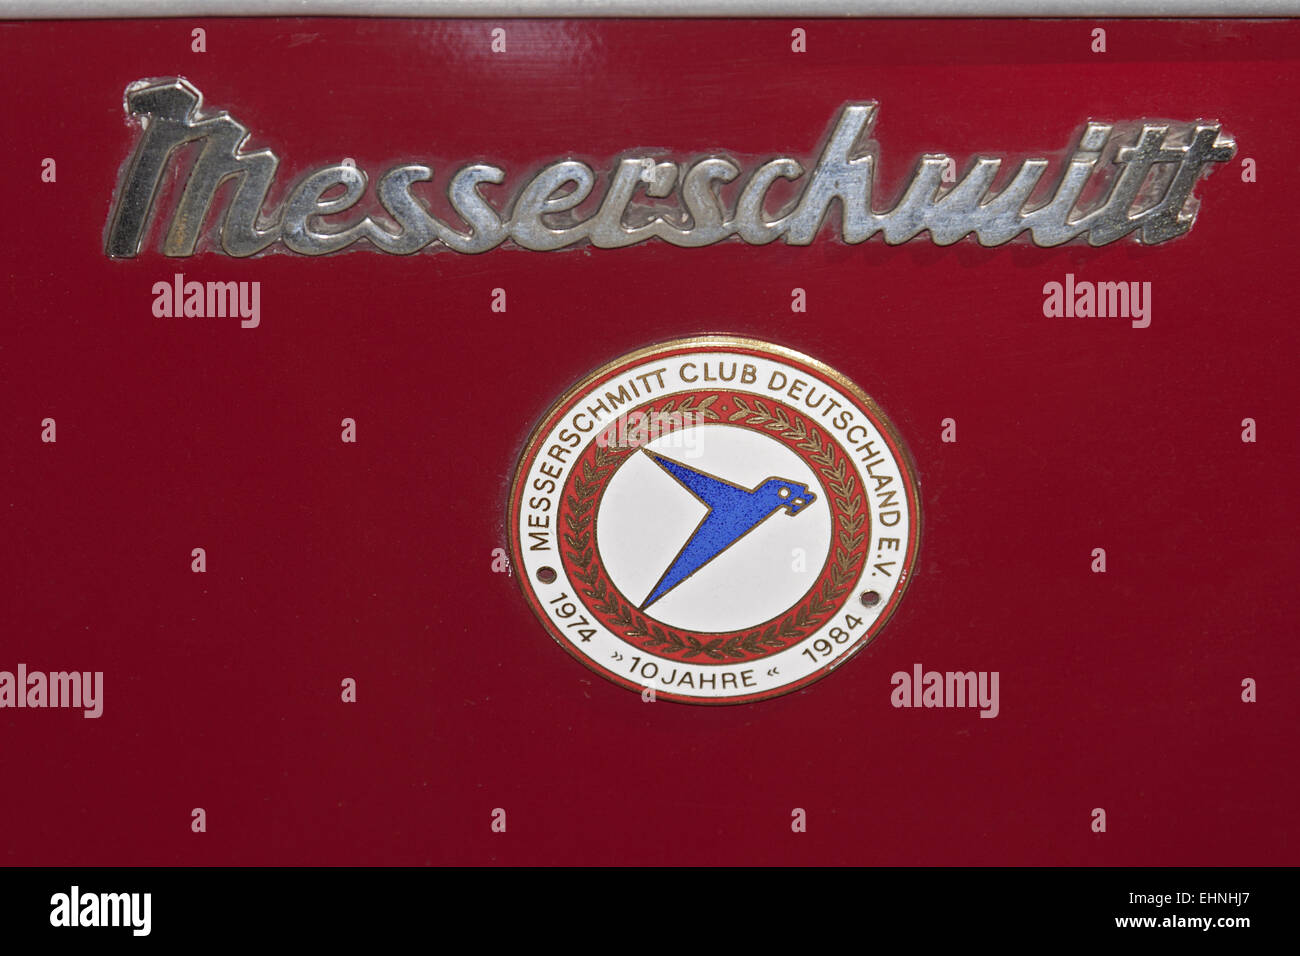 Messerschmitt Stock Photo